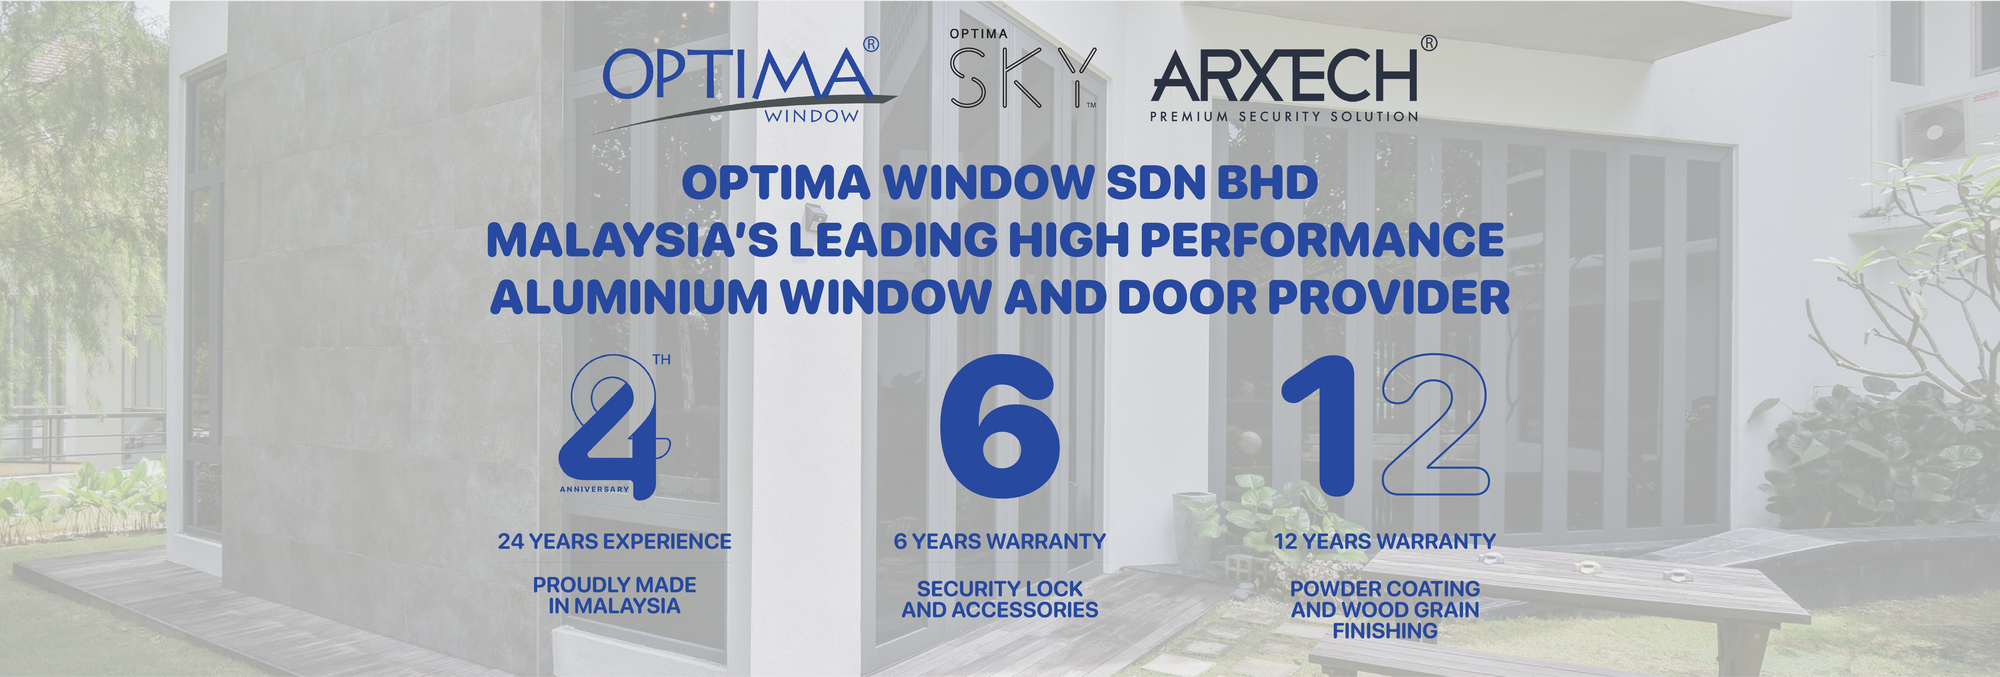 Optima Window Google Cover Photo 24 Year Anniversary High Performance Aluminium Window and Door